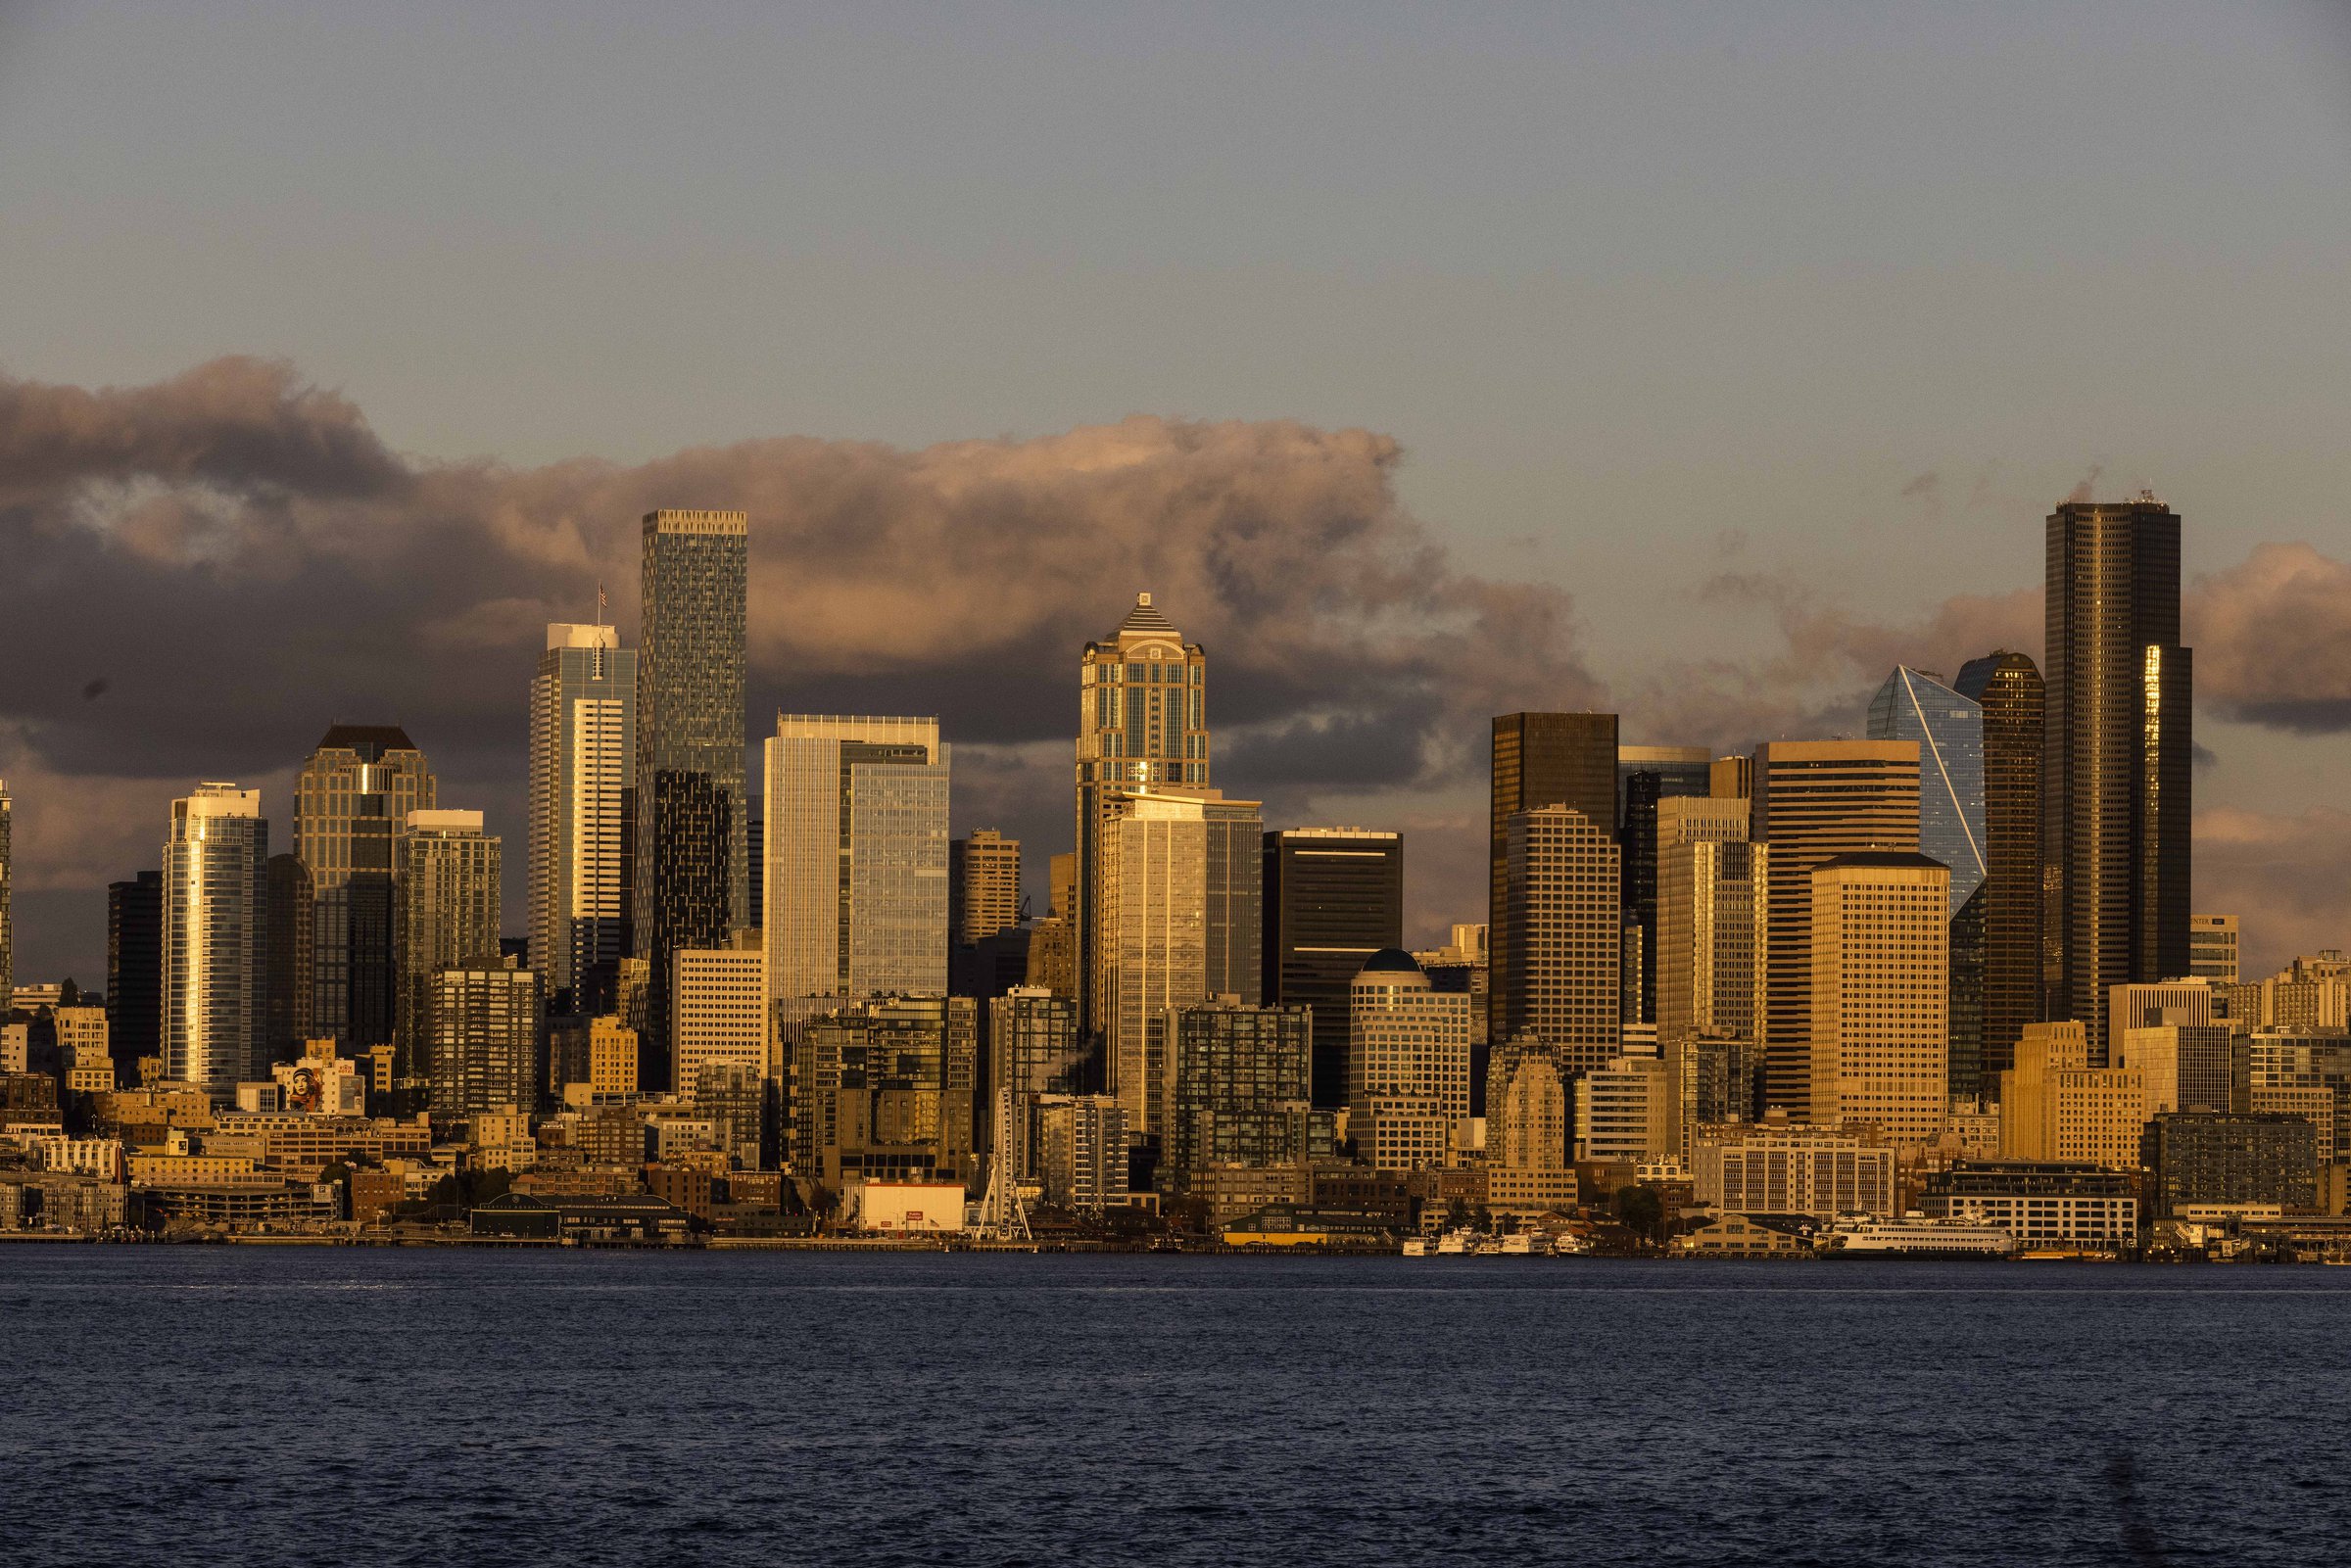 Survei mengatakan Seattle adalah salah satu kota terbaik untuk para lajang dan berpesta?!  eh, tidak